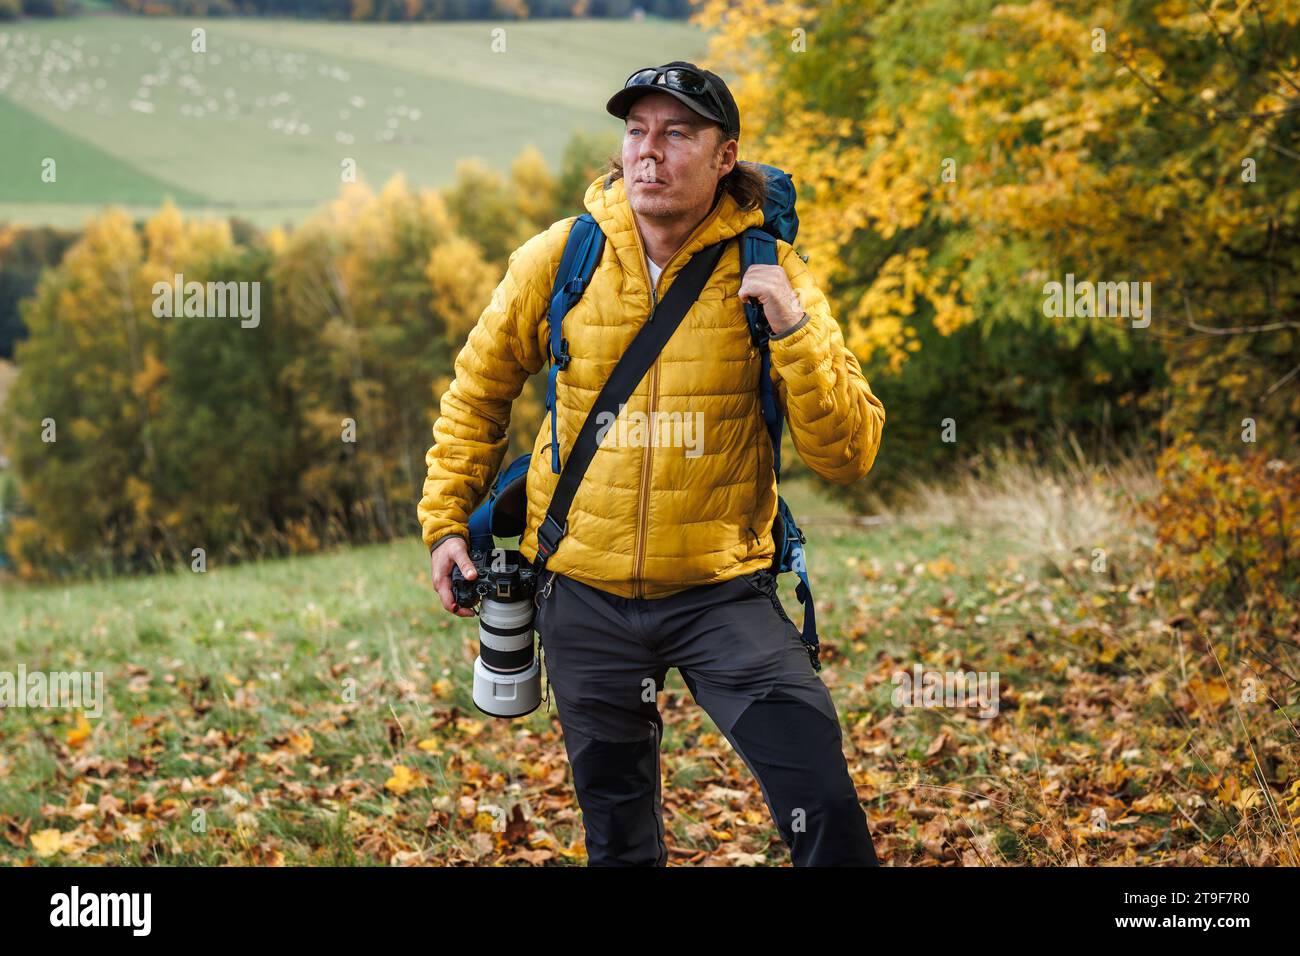 Photographe animalier explorant la forêt et l'observation des oiseaux. Homme avec veste jaune et caméra randonnée dans les bois d'automne Banque D'Images